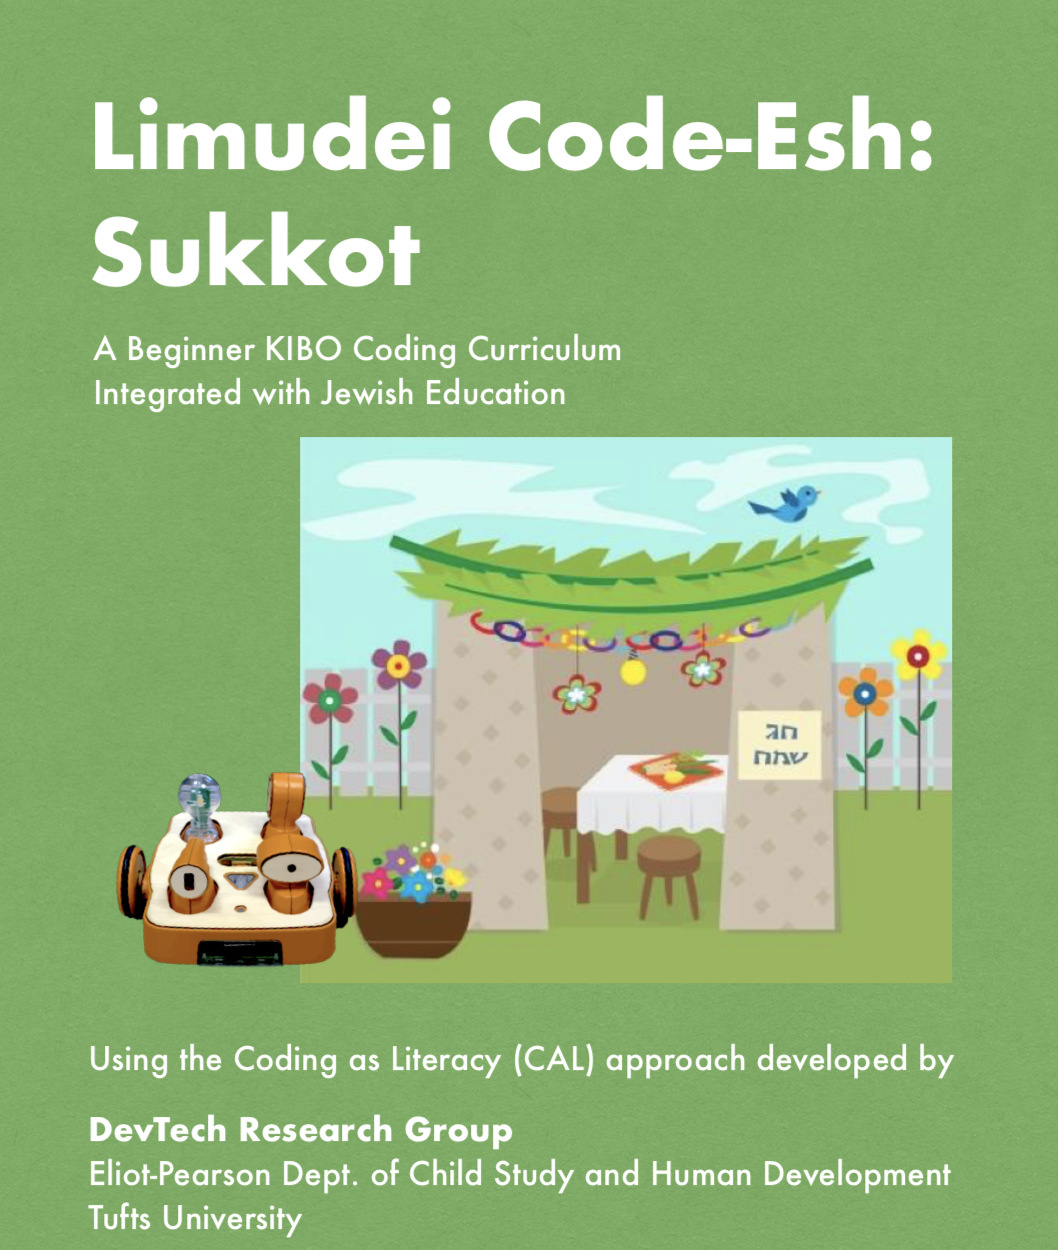 Limudei Code-Esh: Sukkot Document Image